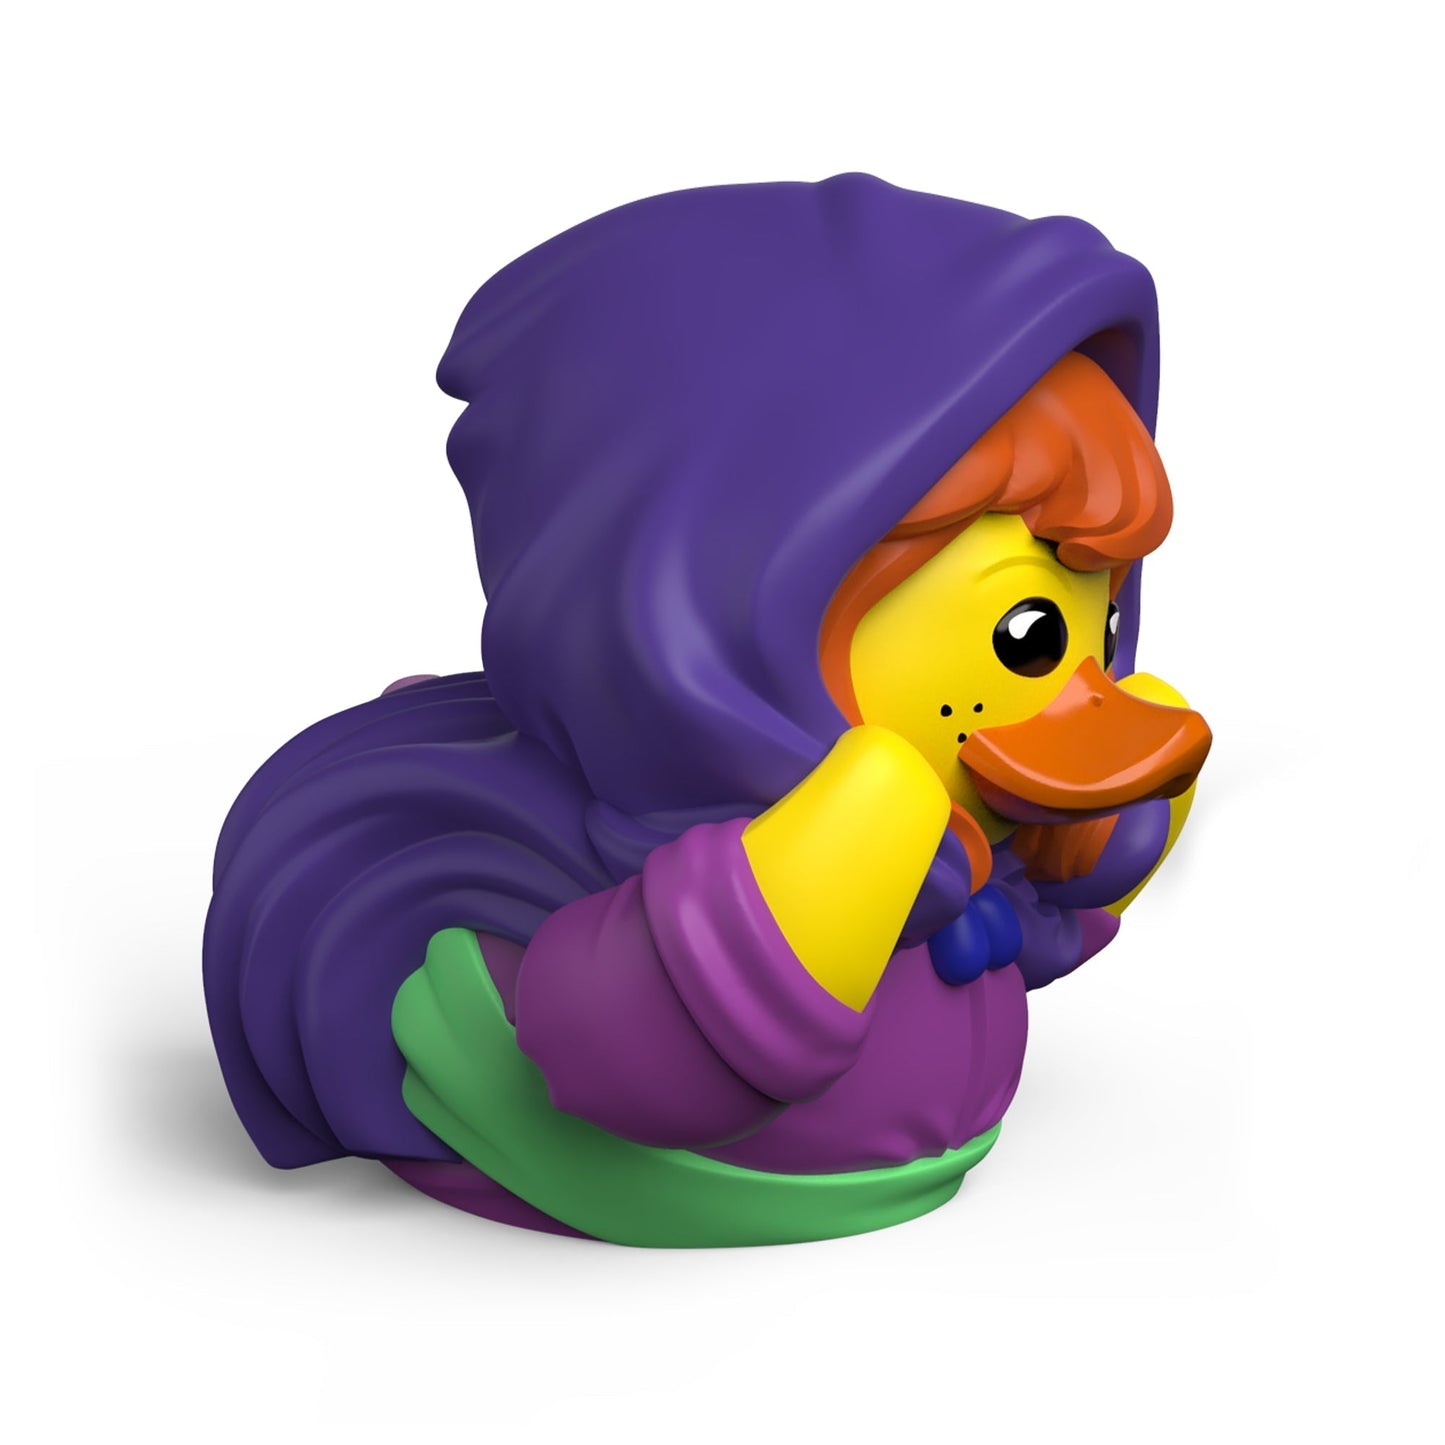 Duck Sheila the Thief